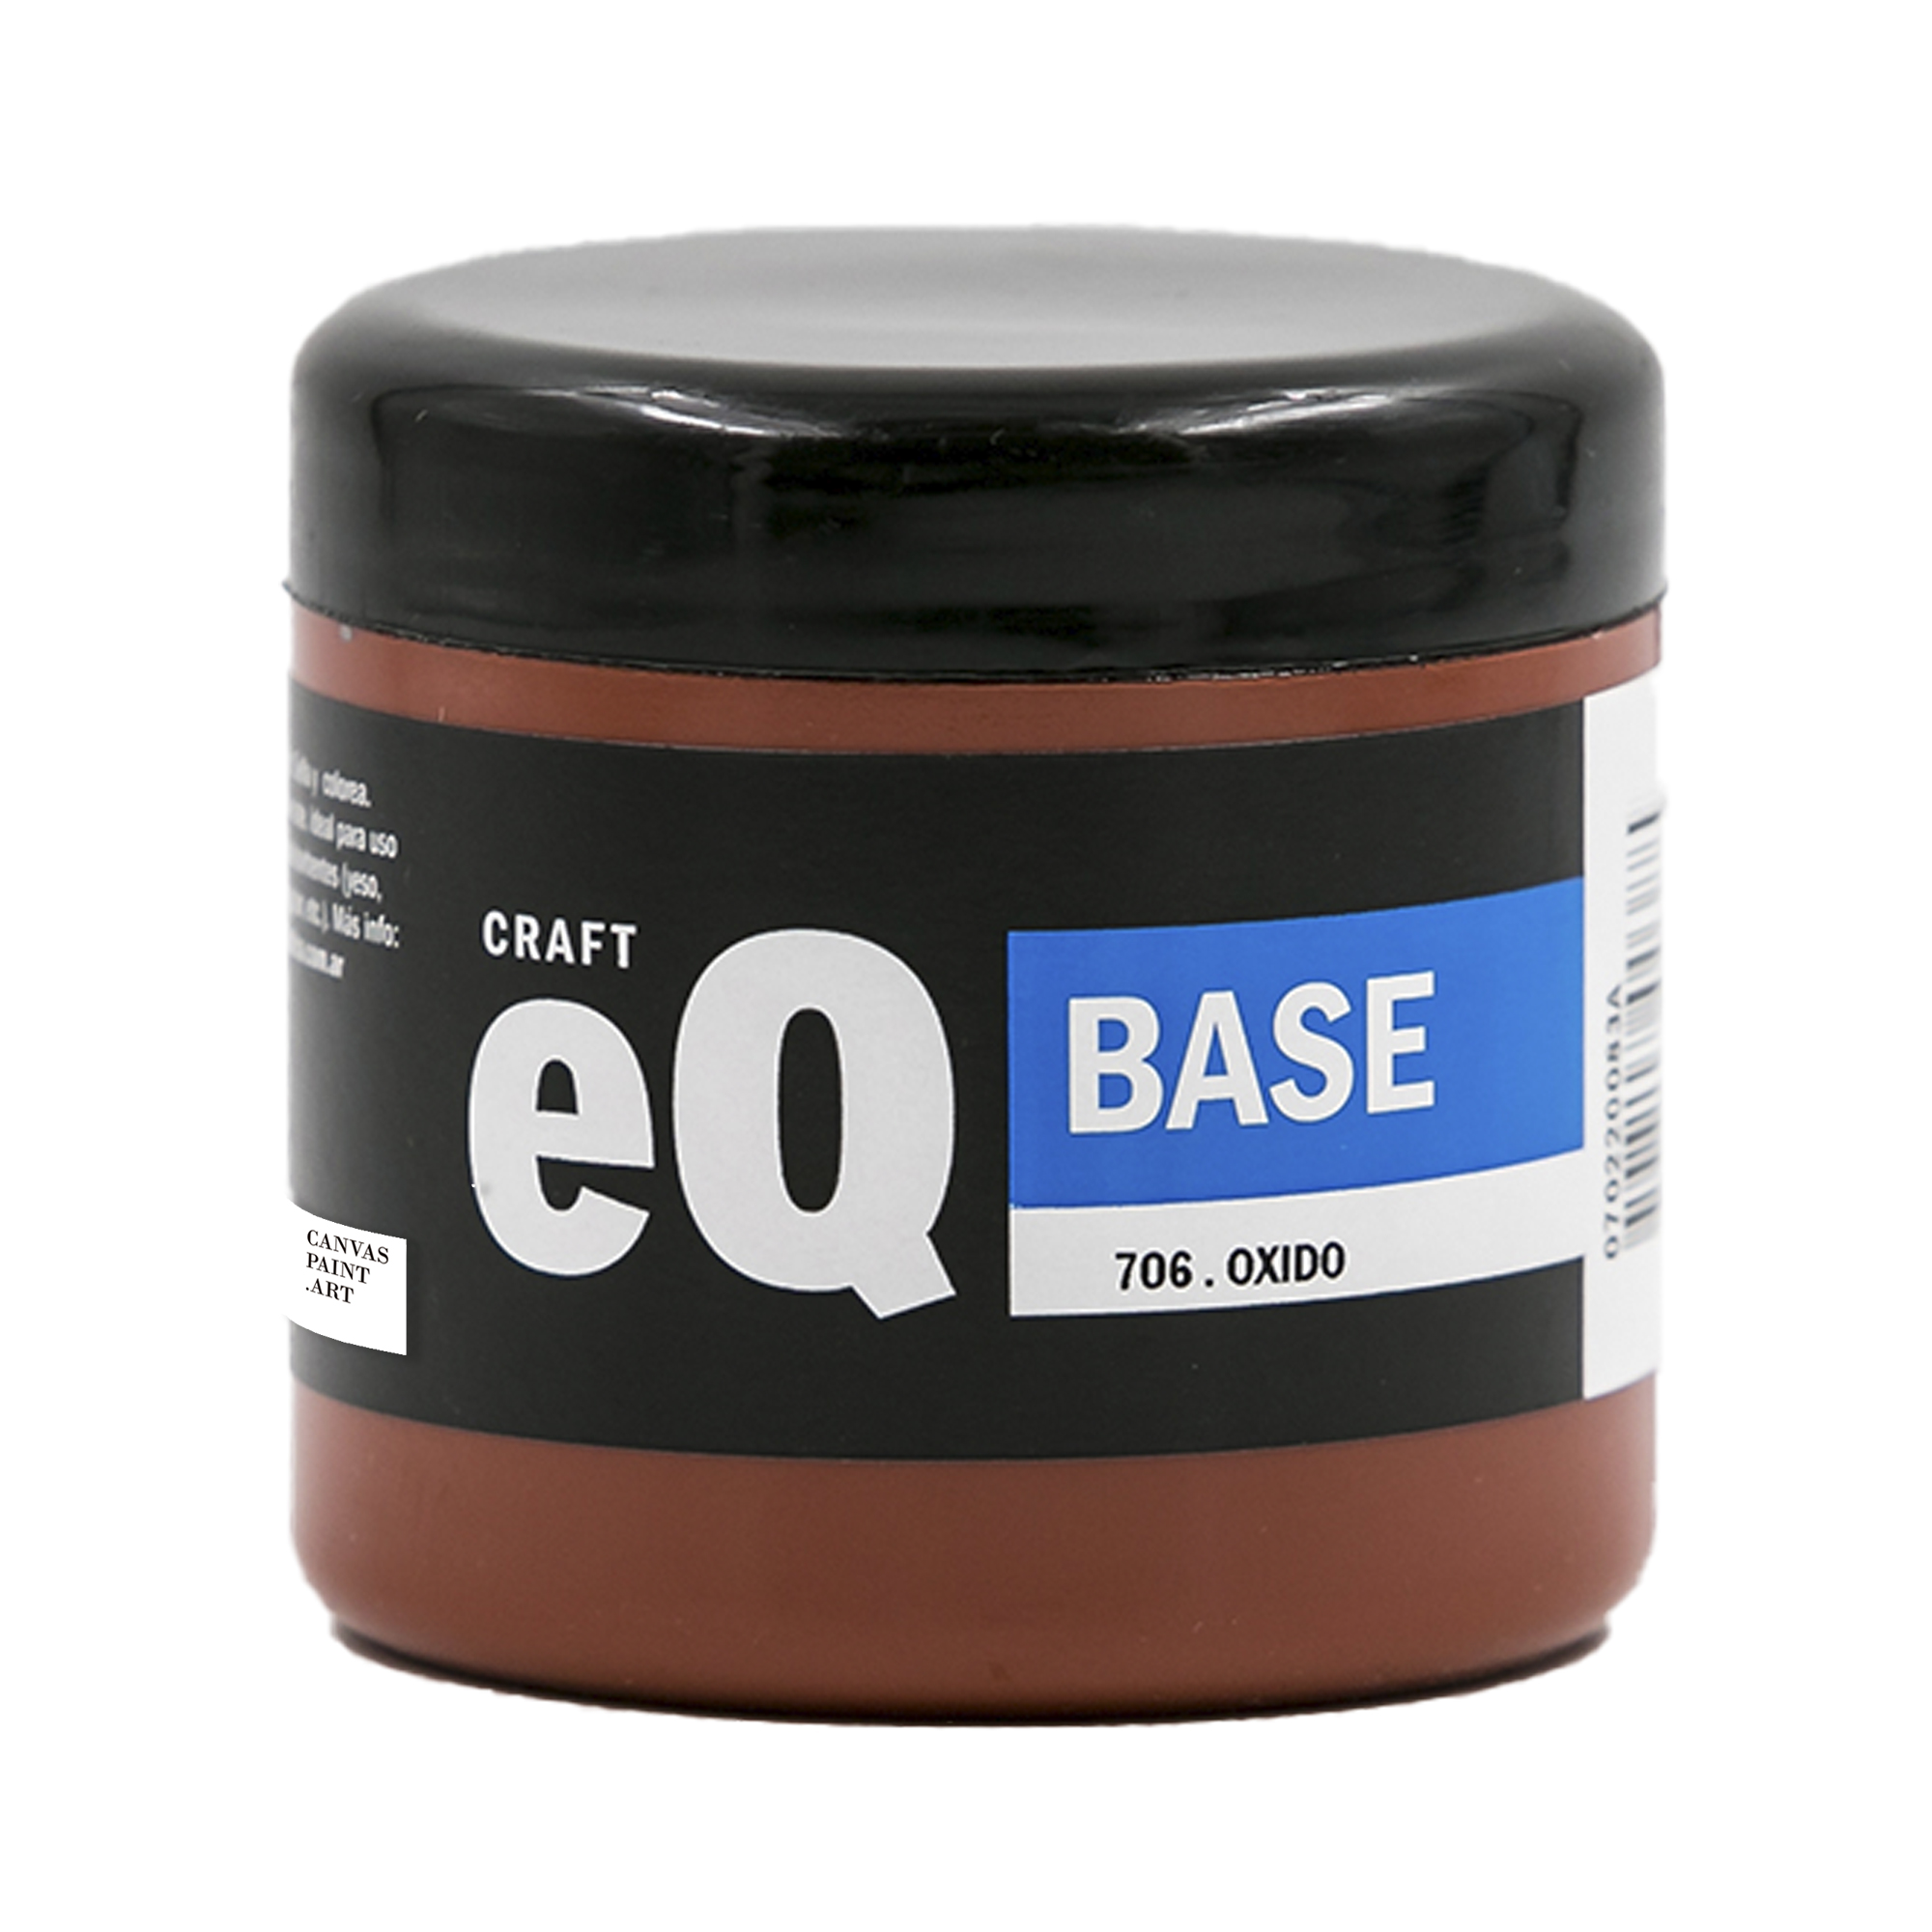 base_200_oxido